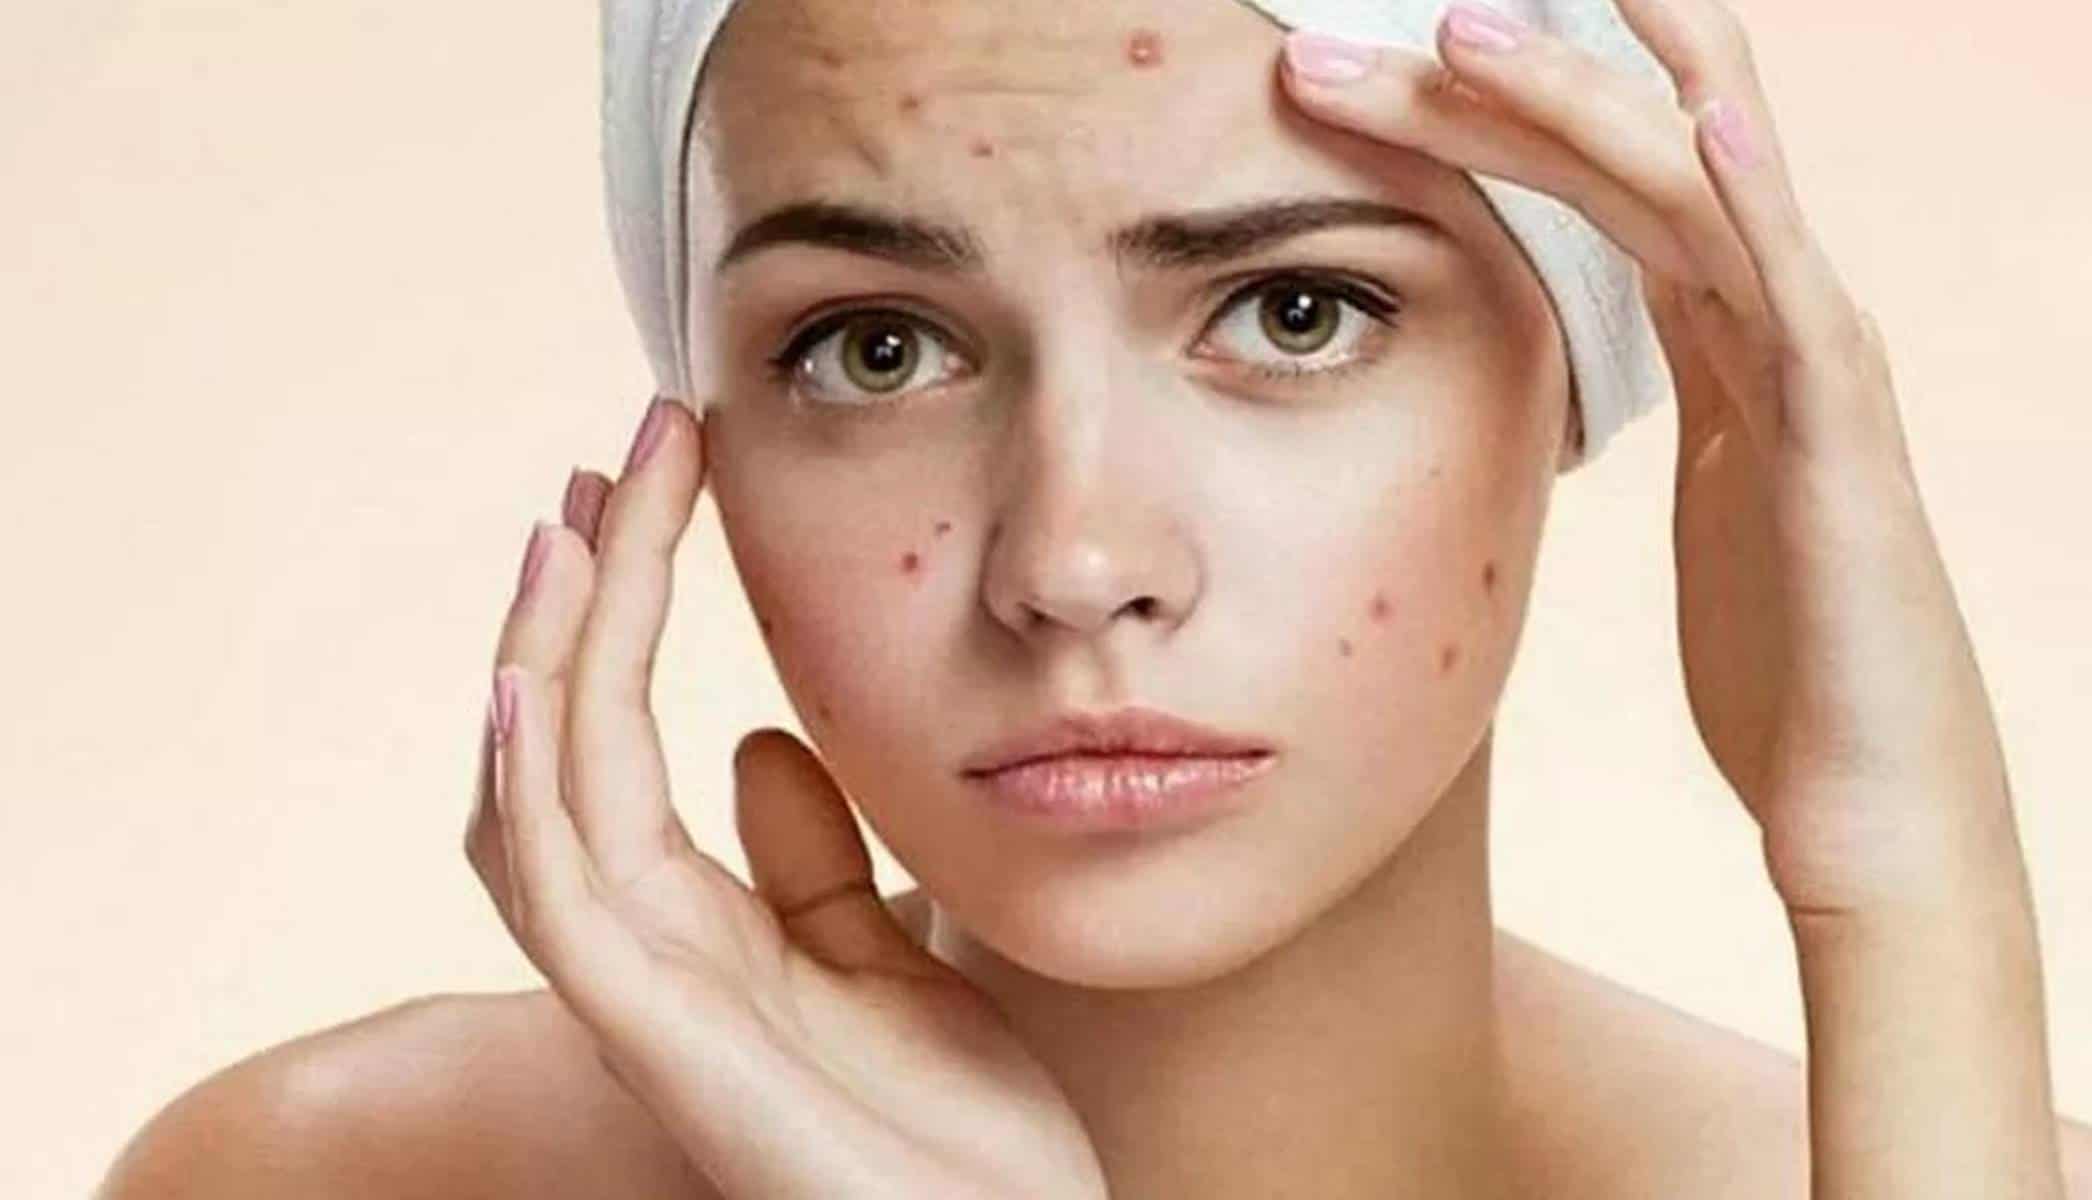 Adeus manchas de acne: descubra como eliminá-las com três dicas